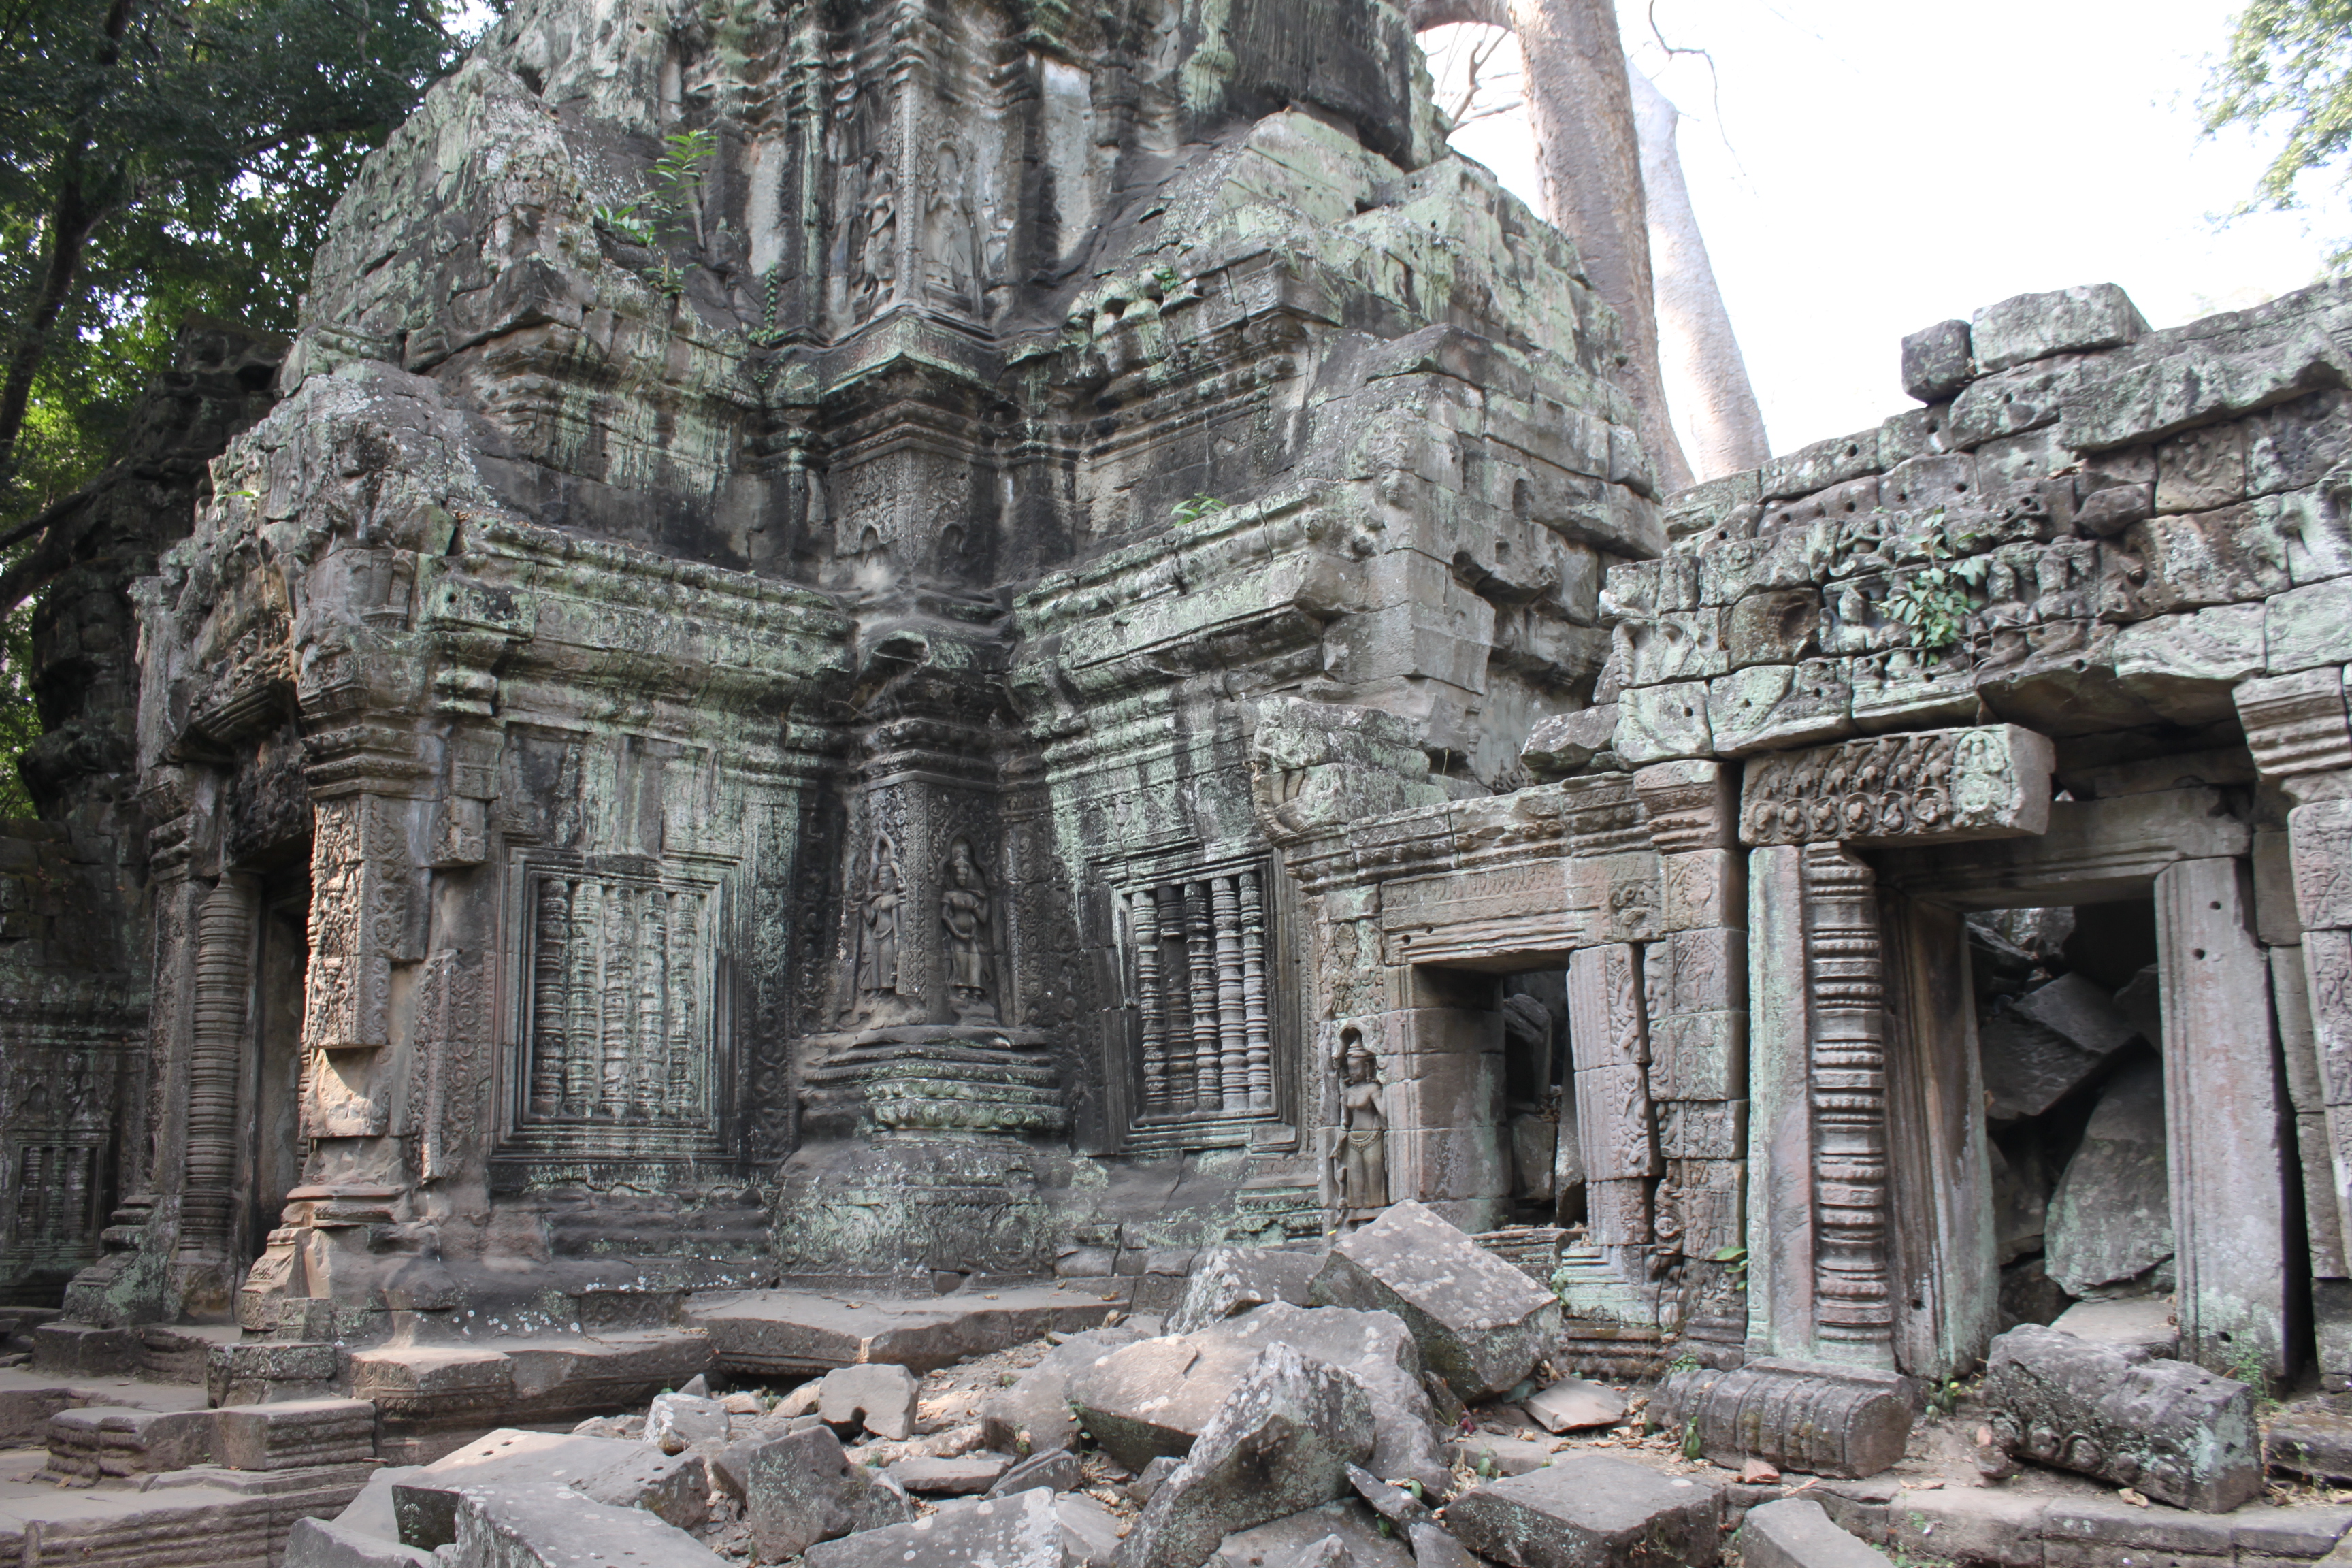 temple ruins - Google Search | Mini Landscapes | Pinterest | Temple ...